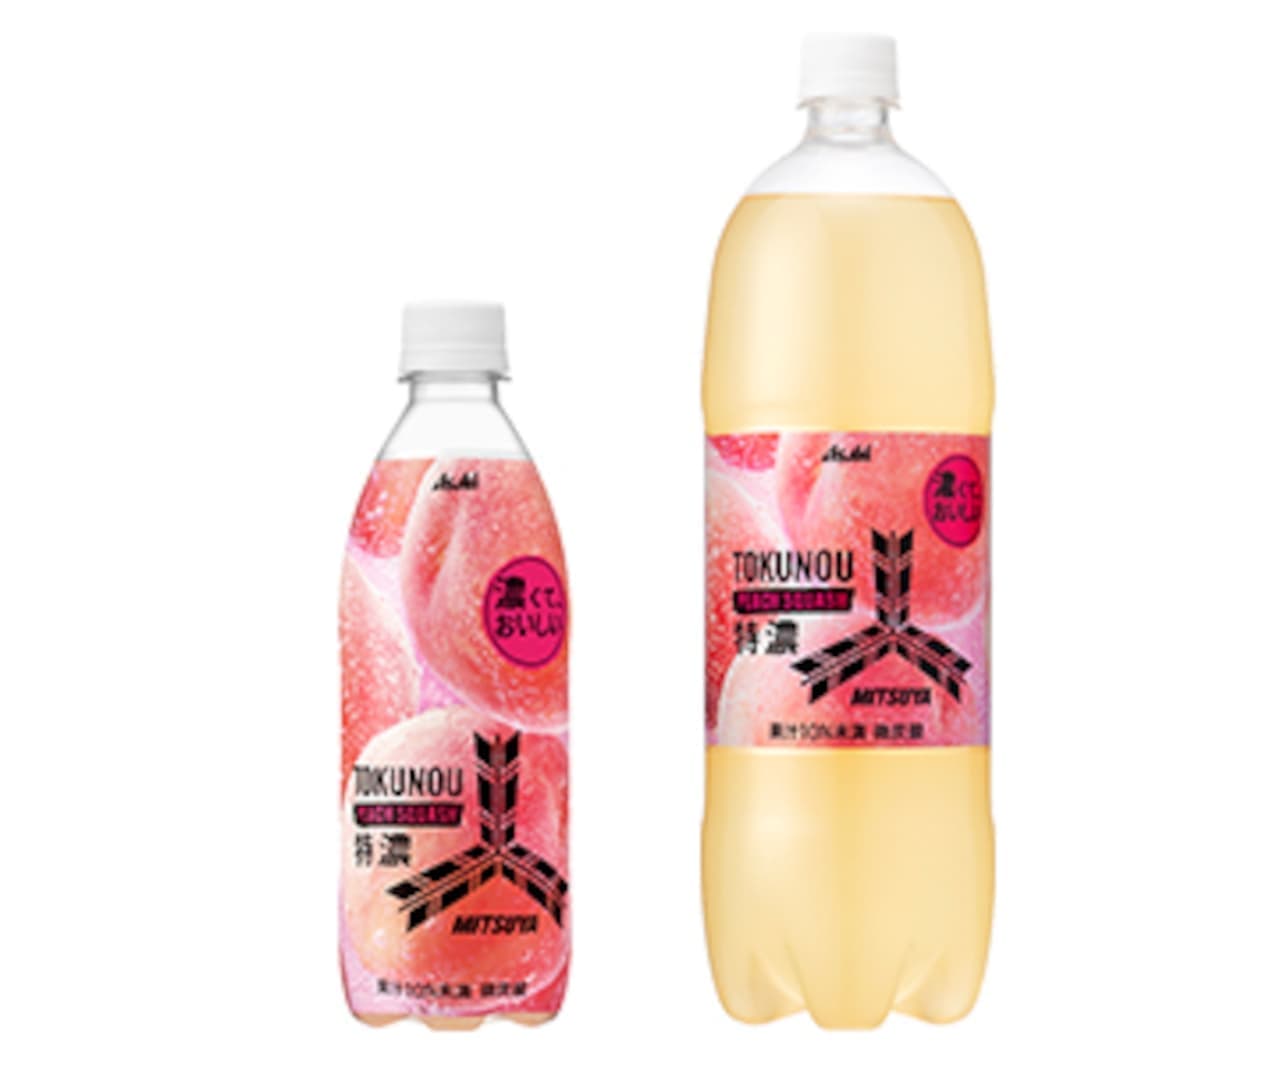 Asahi Soft Drinks "Mitsuya Tokuno Peach Squash